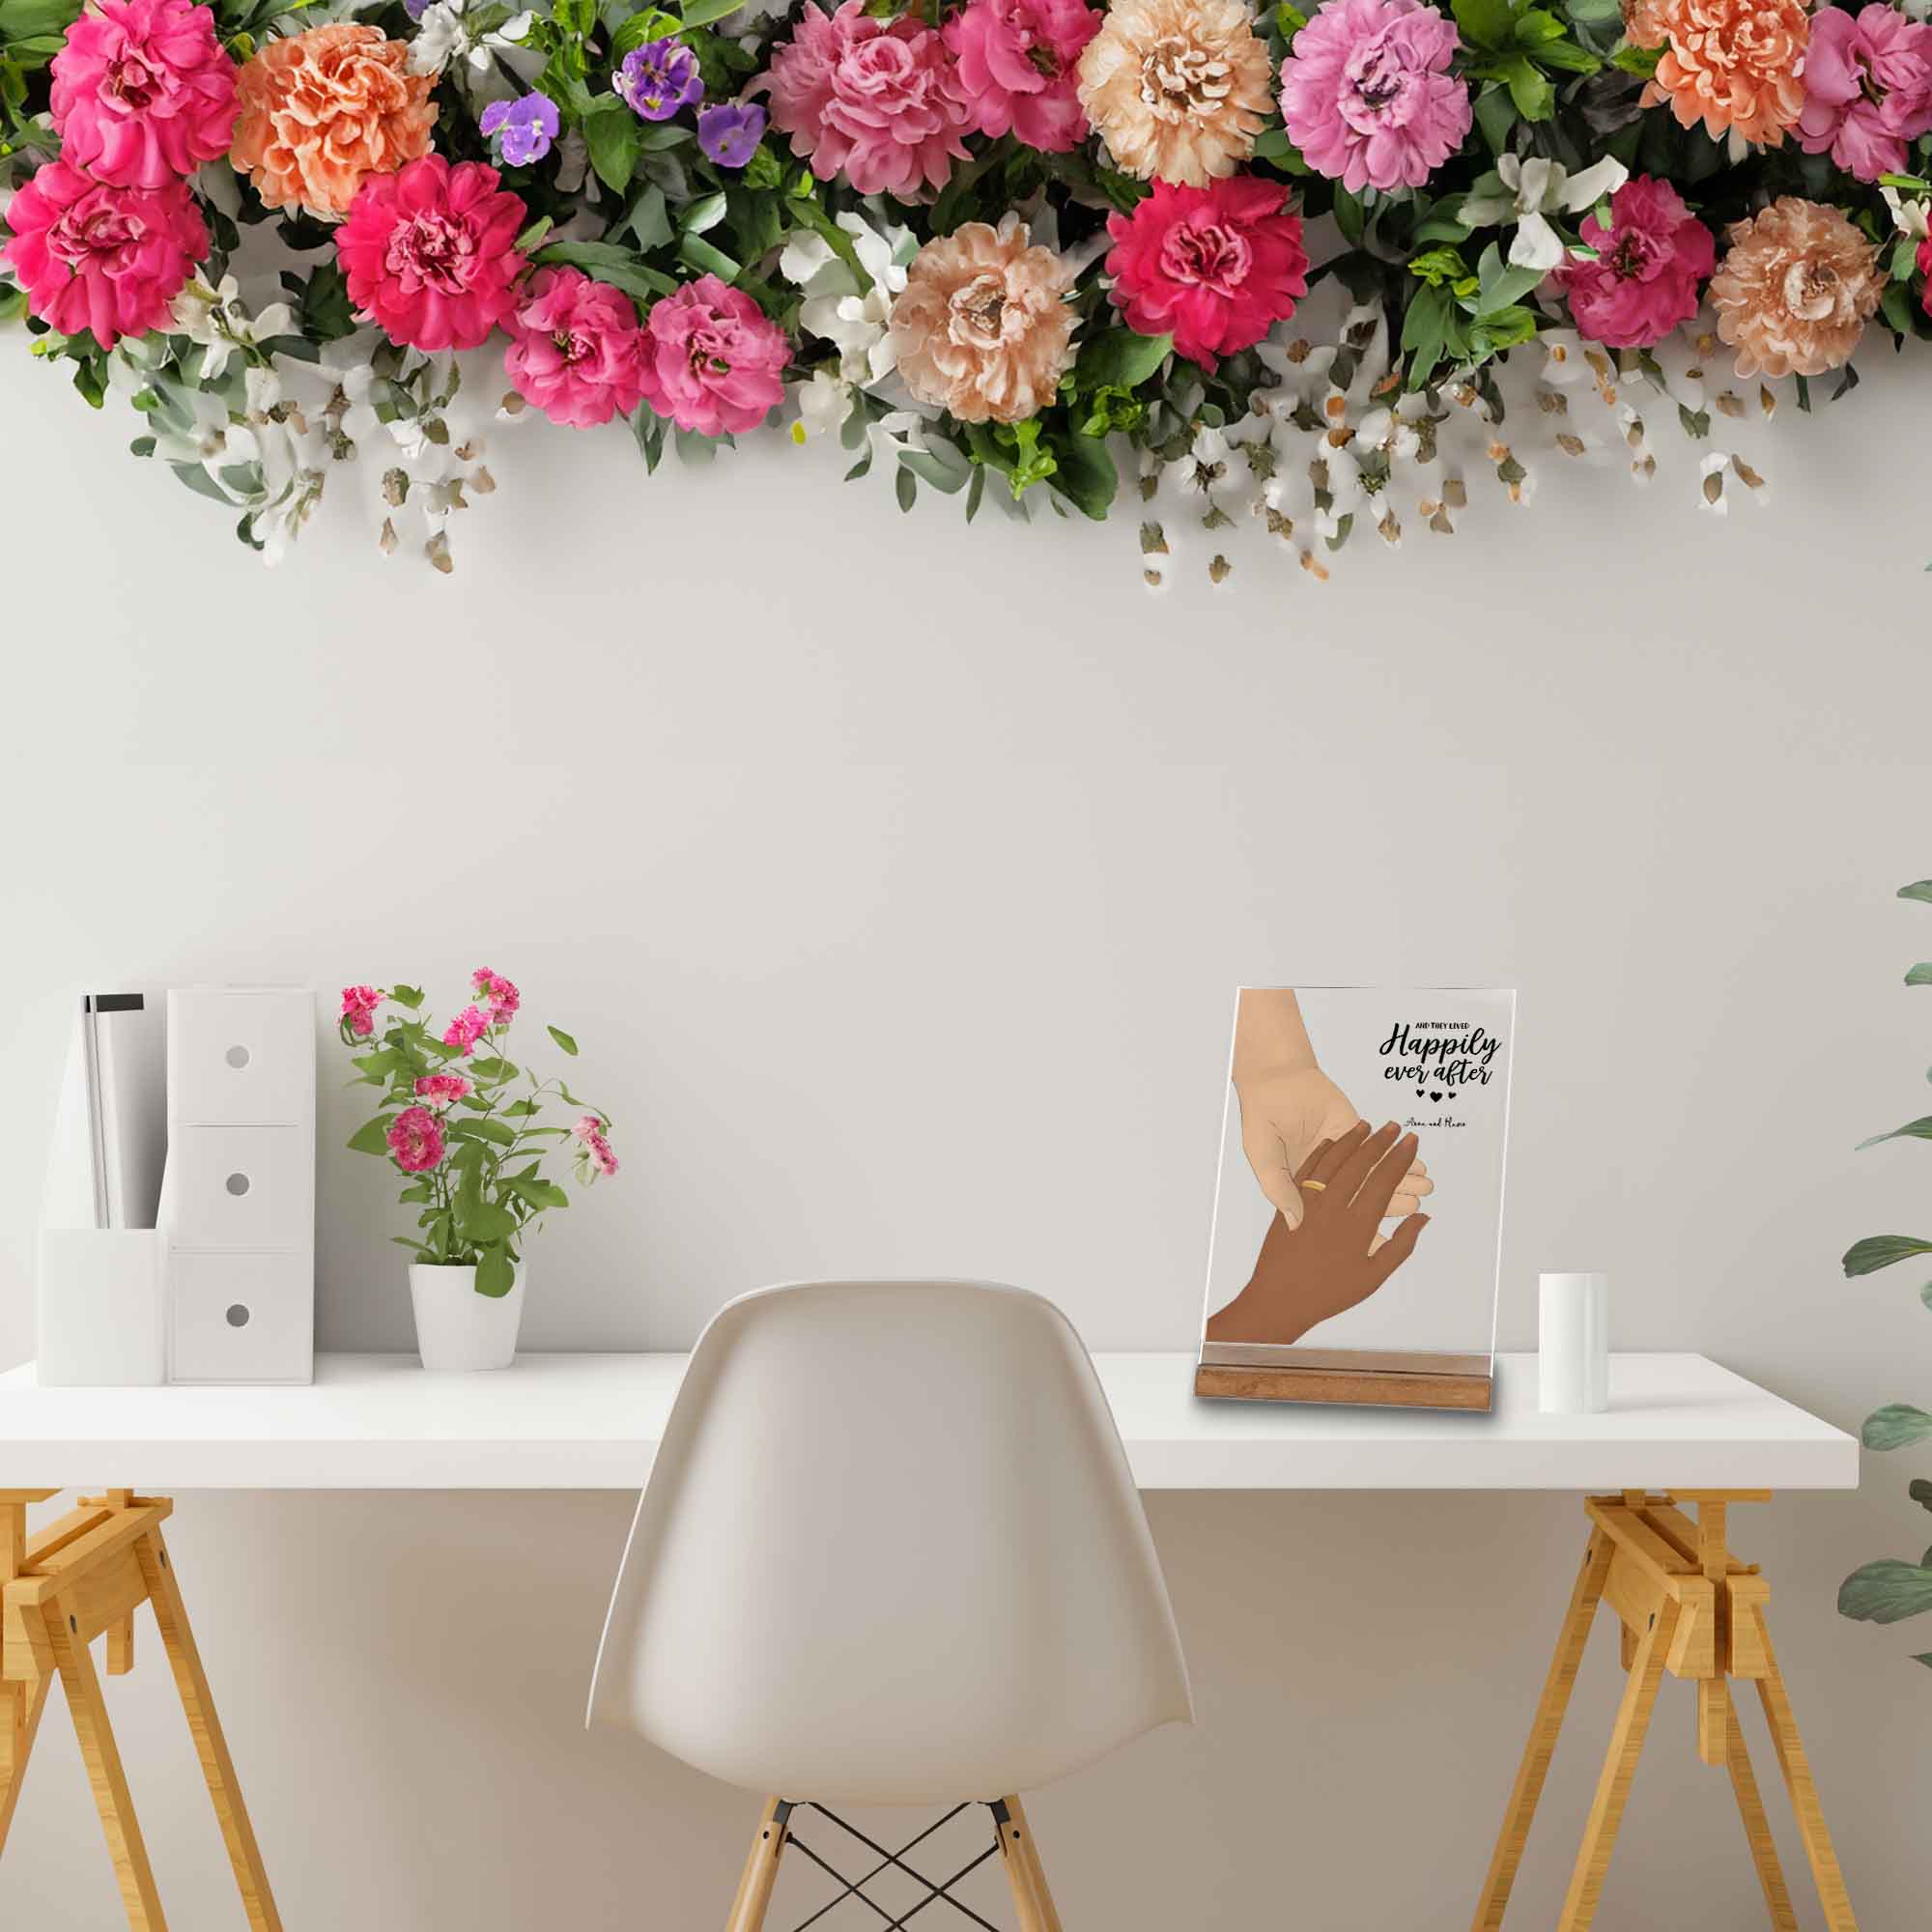 Happply ever after-Dekoration auf dem Schreibtisch-mit Blumenkranz